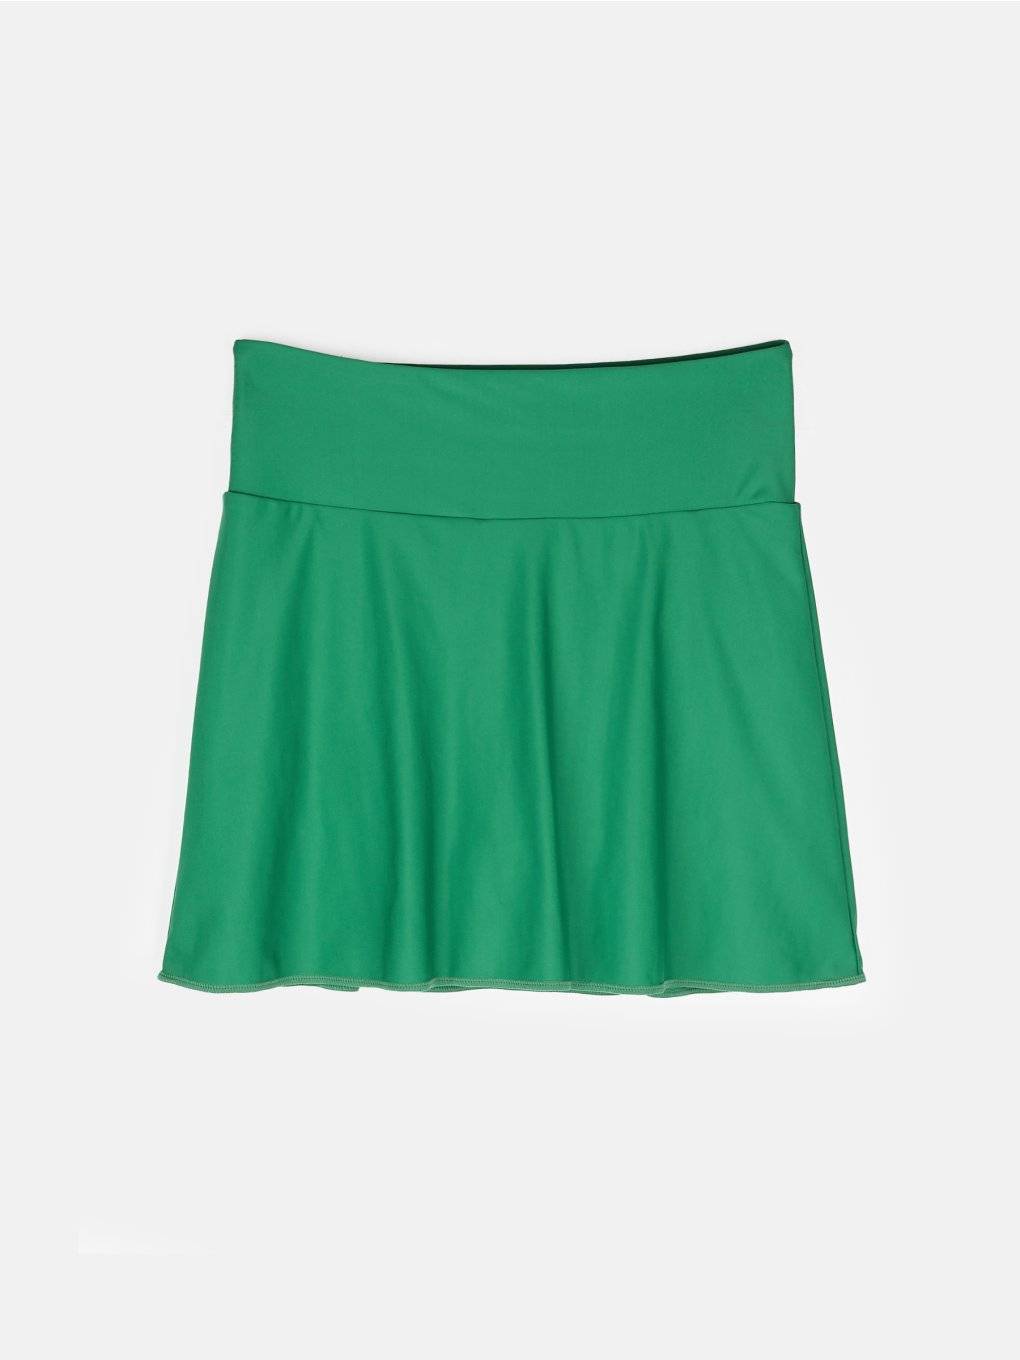 Sportska suknja s unutrašnjim kratkim hlačama